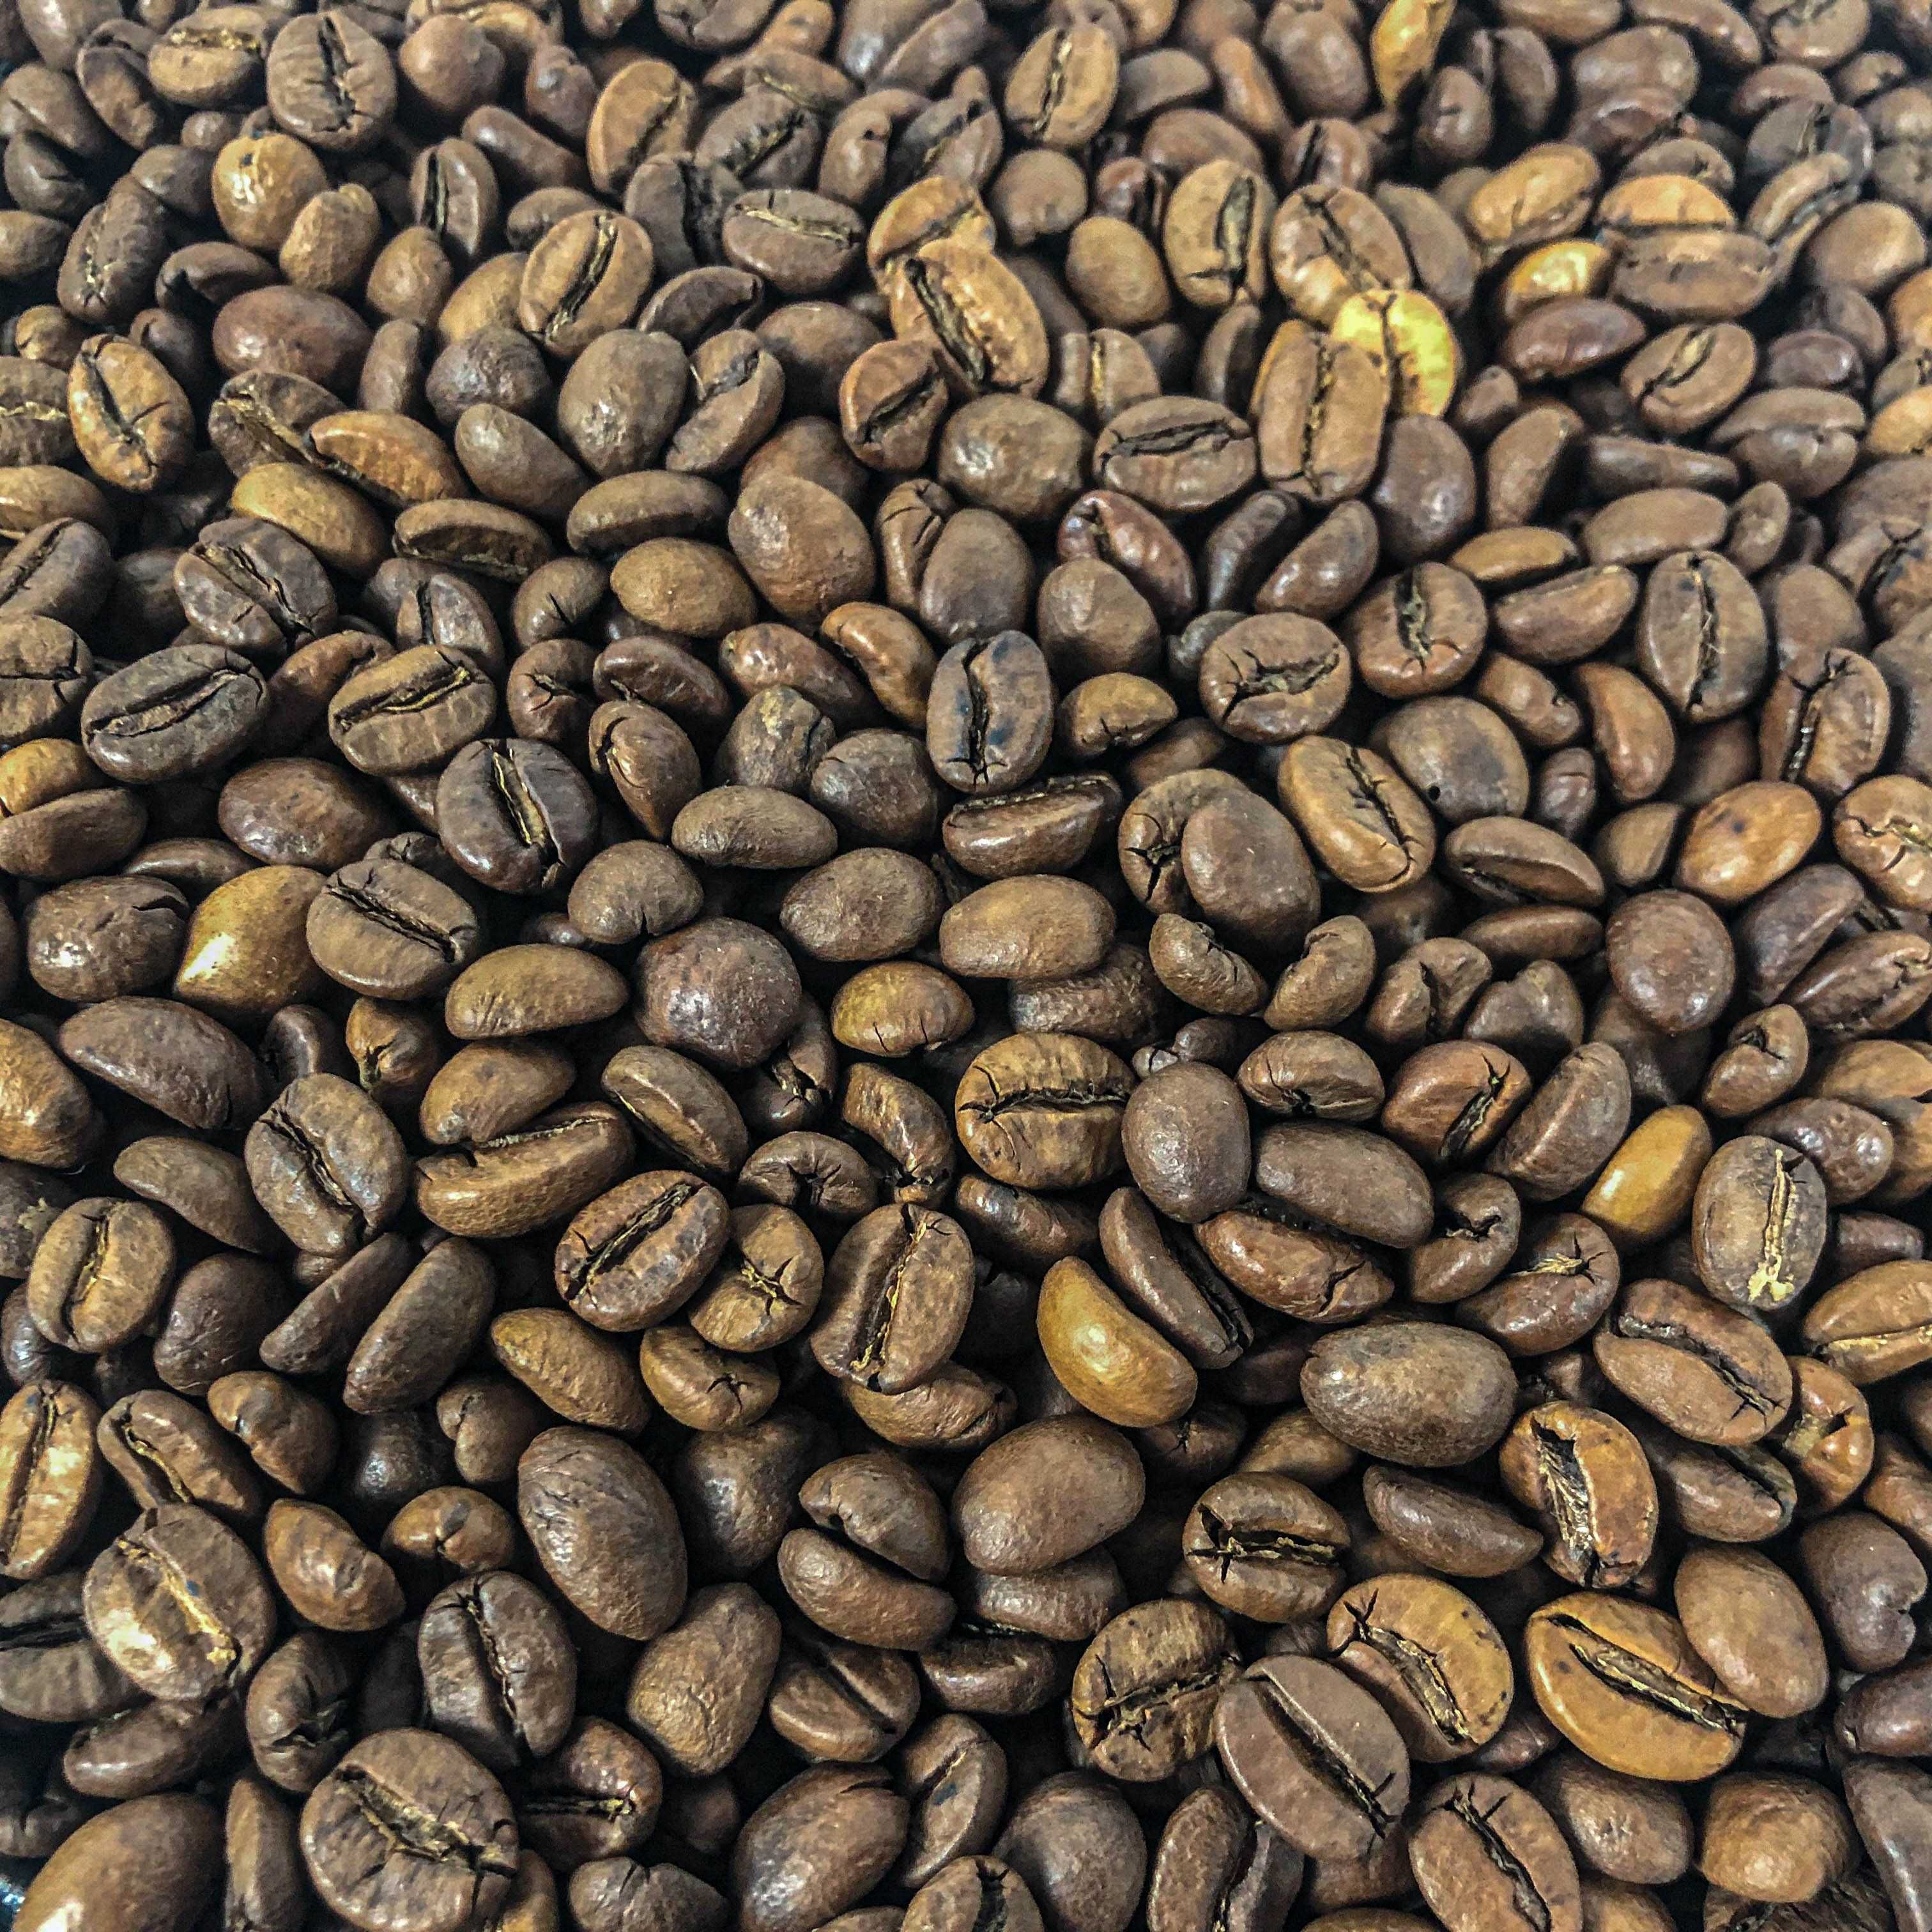 ЕКСКЛЮЗИВ! Кава в зернах купаж 60%40% від шефу кав'ярні ITALIA (Турин)